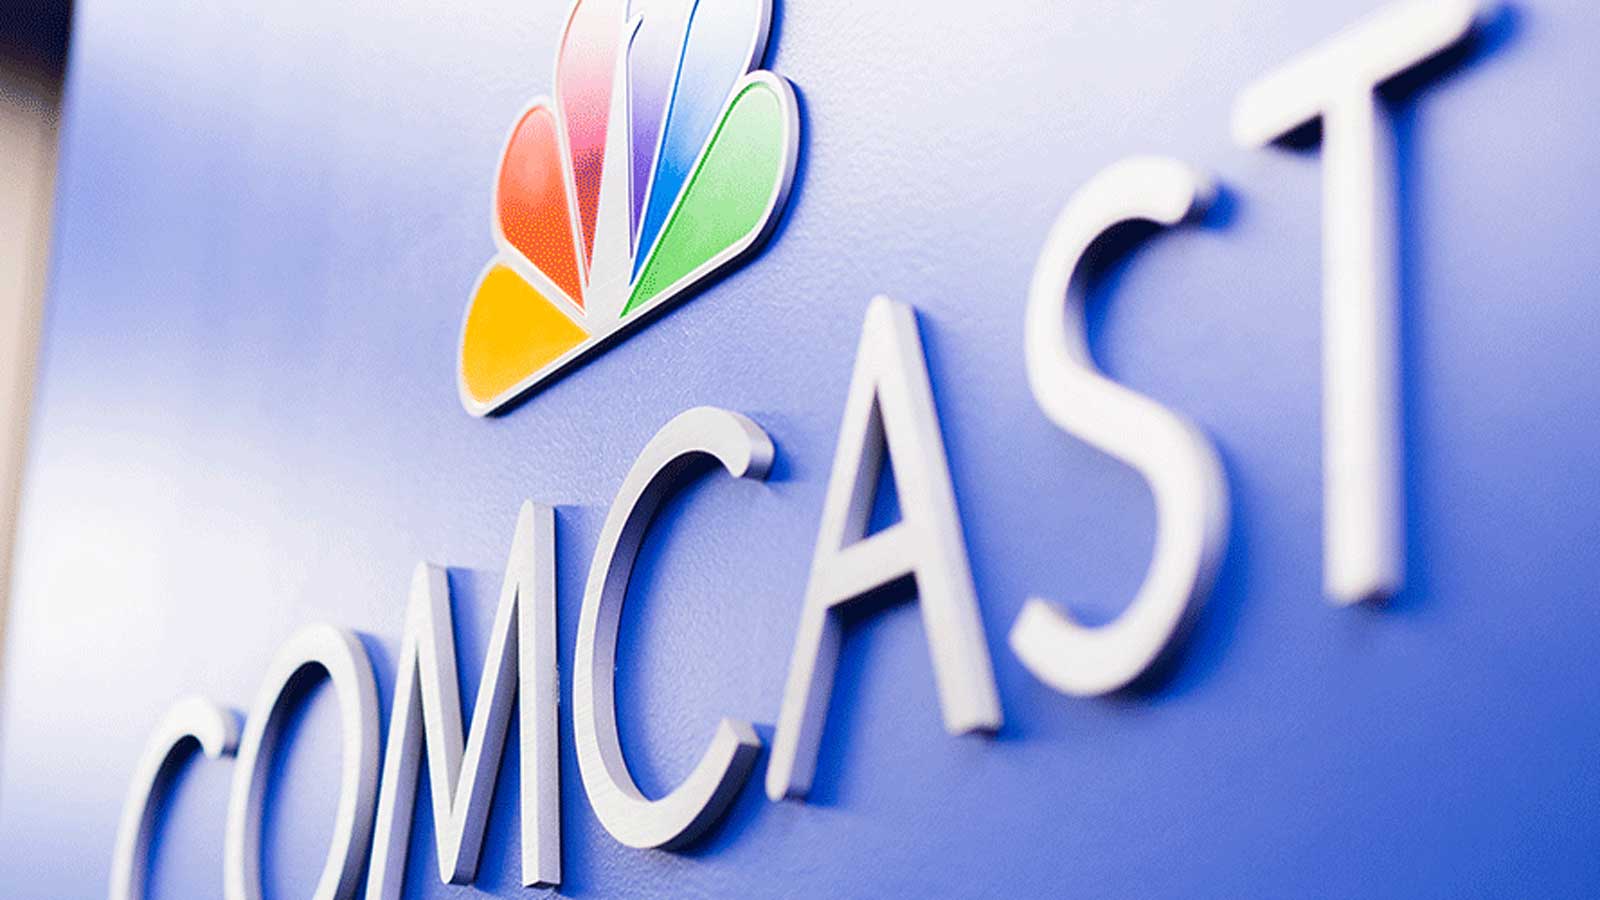 Comcast logo signage